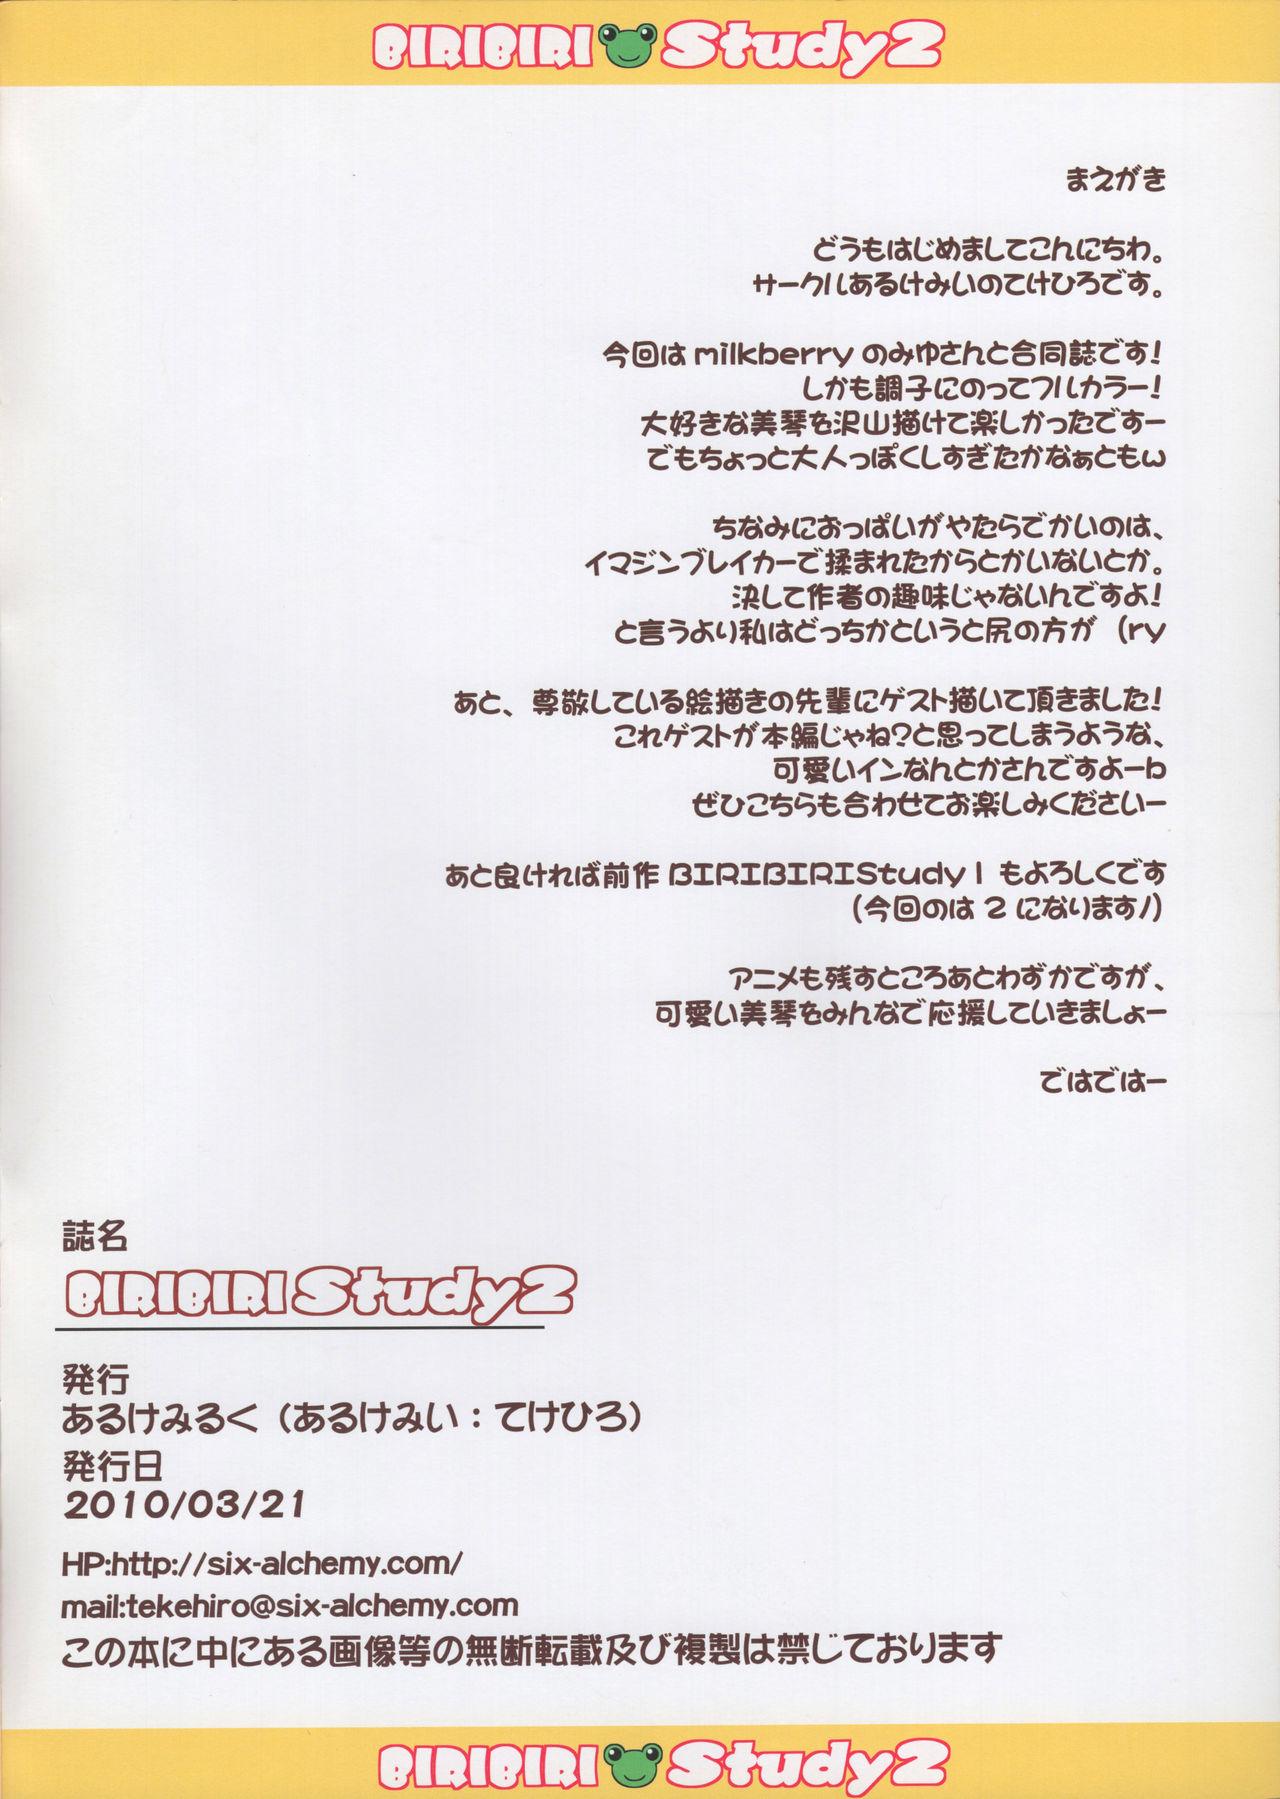 Amateur BiriBiri Study 2 + Uiharu Haru no Pantsu Matsuri - Toaru kagaku no railgun | a certain scientific railgun T Girl - Page 2